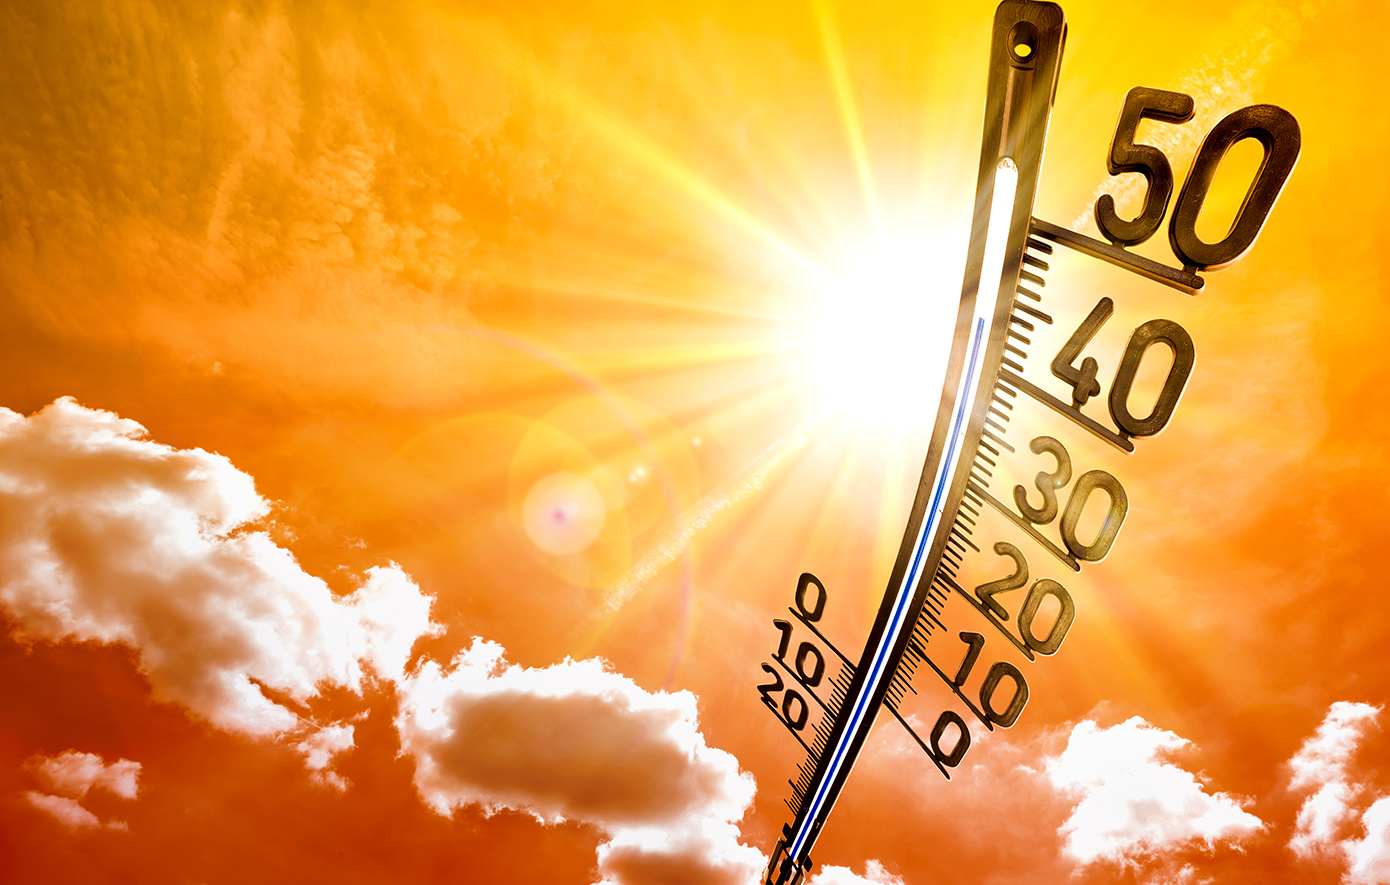 Η Ευρώπη θερμαίνεται διπλάσια από τον παγκόσμιο μέσο όρο και προετοιμάζεται για το πιο ζεστό καλοκαίρι όλων των εποχών